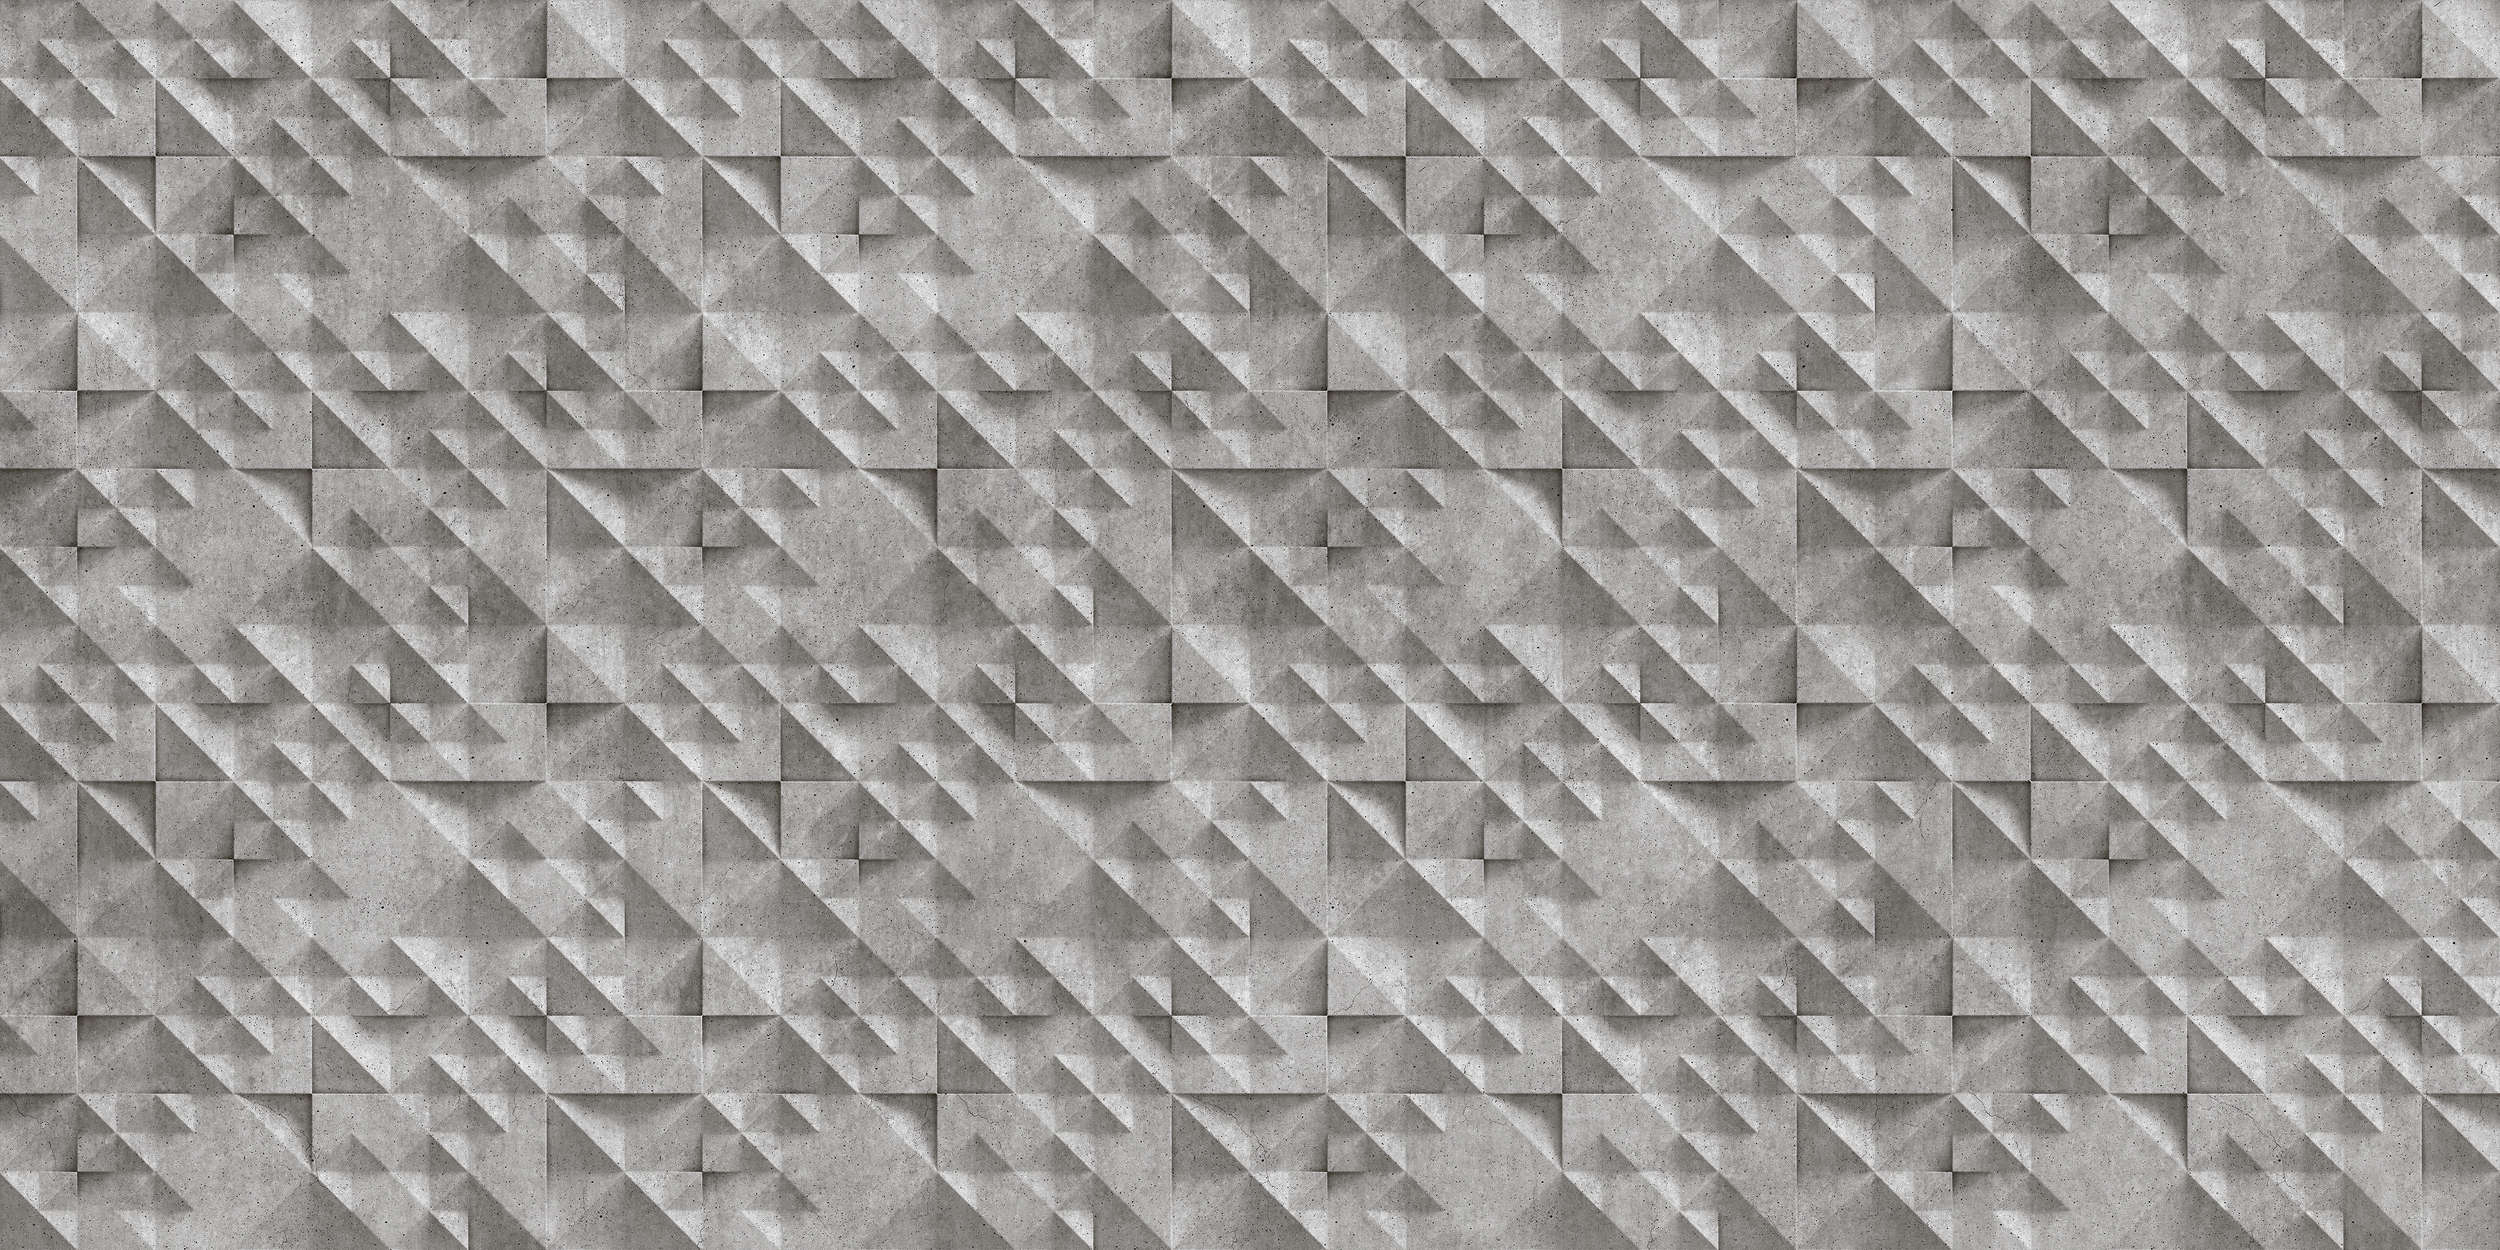             Concrete 2 - Papier peint panoramique 3D cool losanges en béton - gris, noir | intissé lisse nacré
        